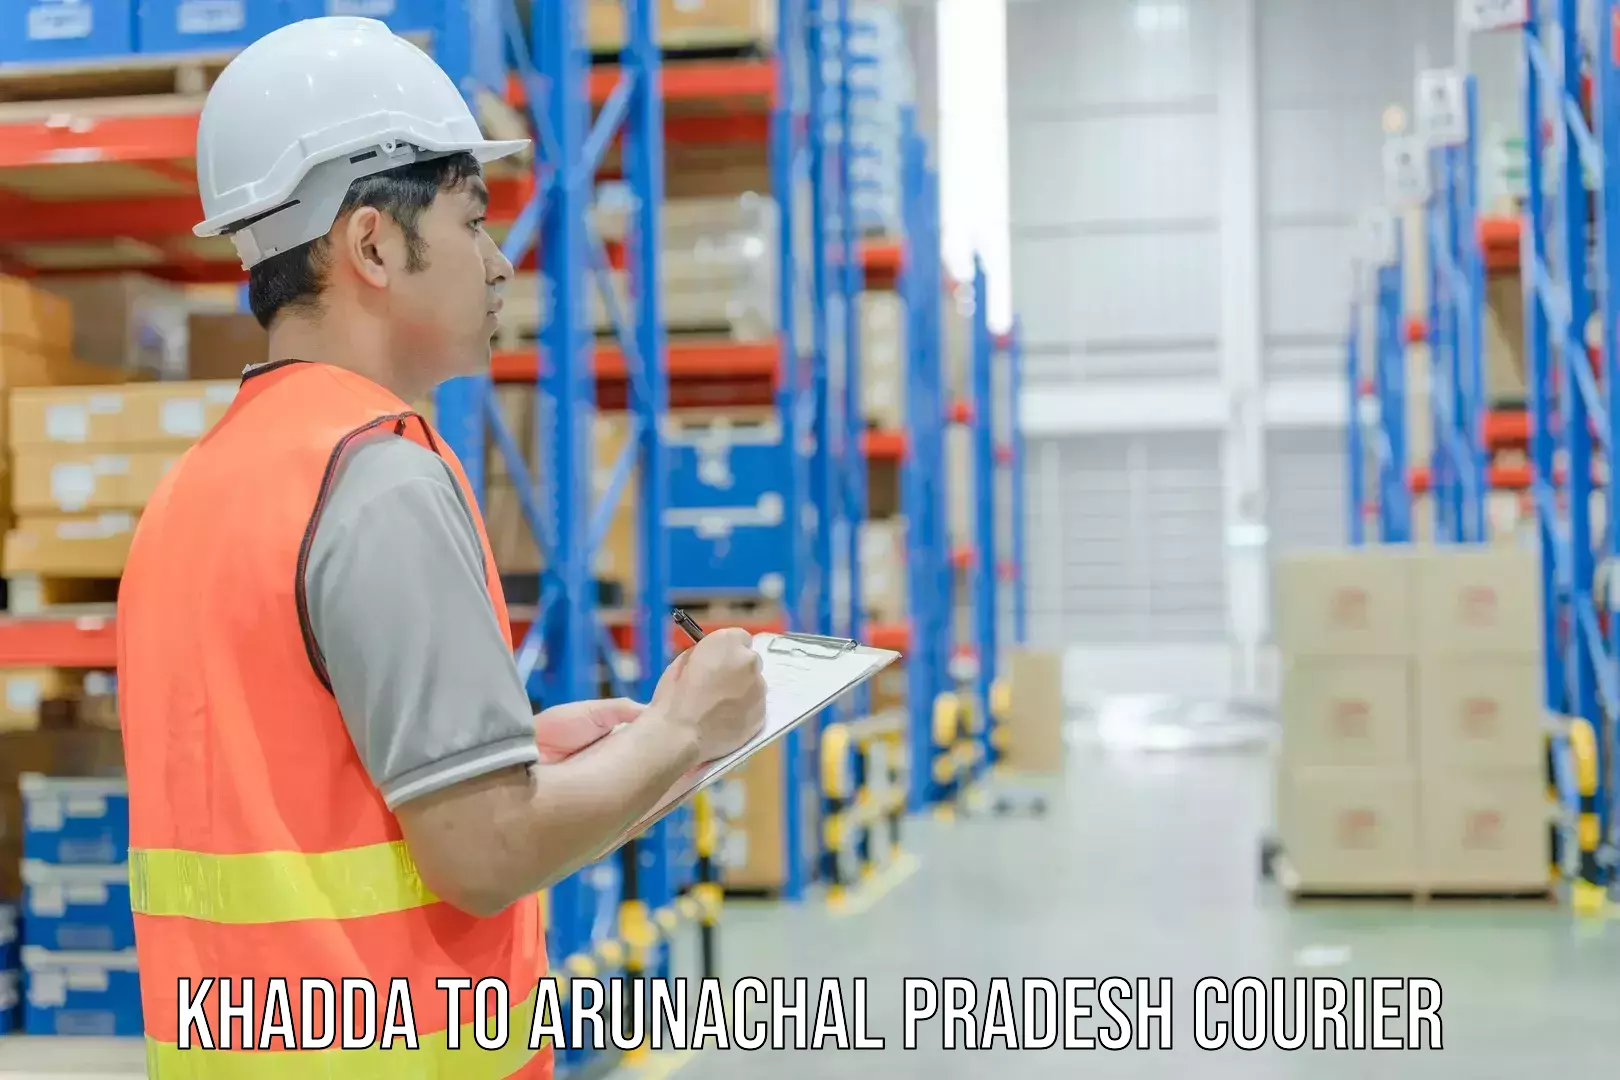 Shipping and handling Khadda to Arunachal Pradesh